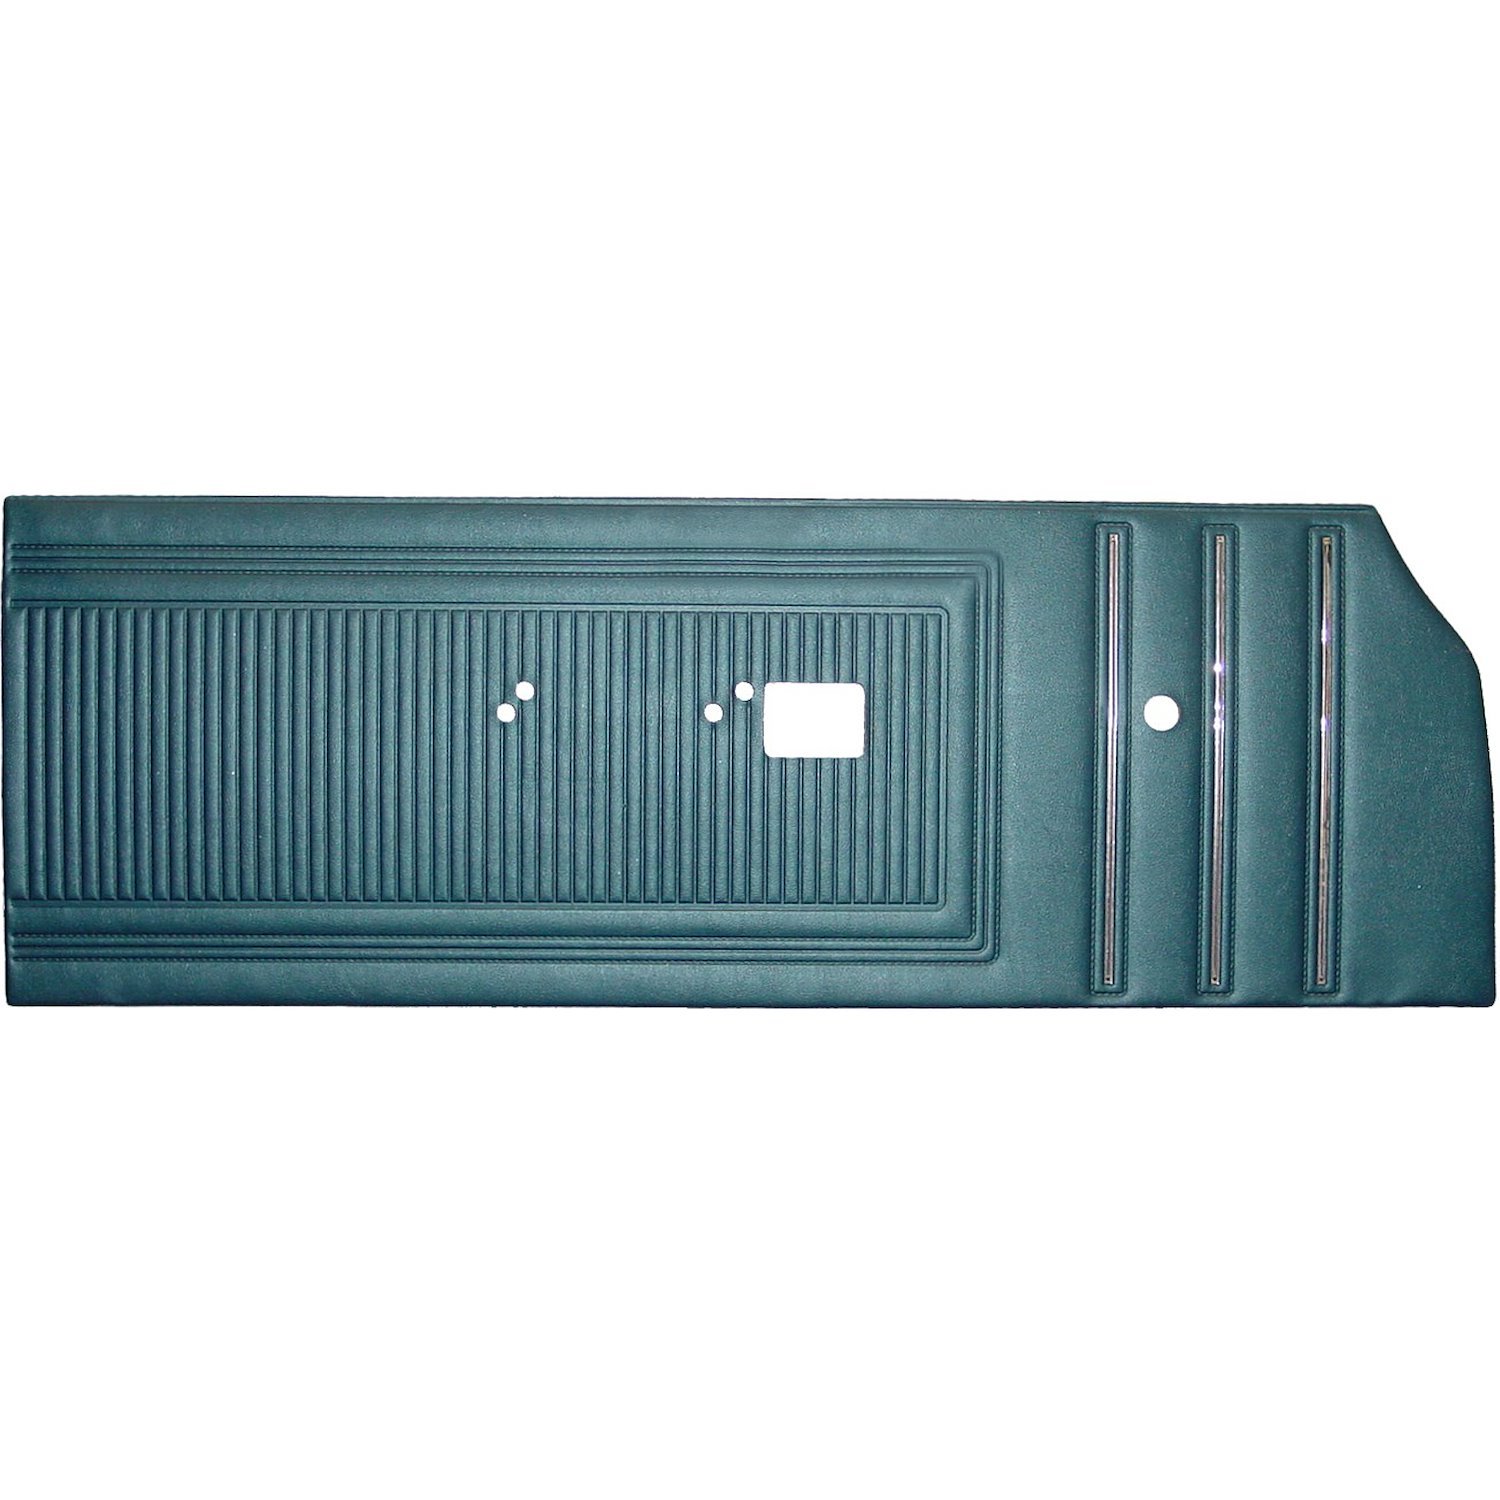 DO70CWD0012330 70 CORONET 440/SUPERBEE DOOR PANELS - DARK METALLIC BLUE